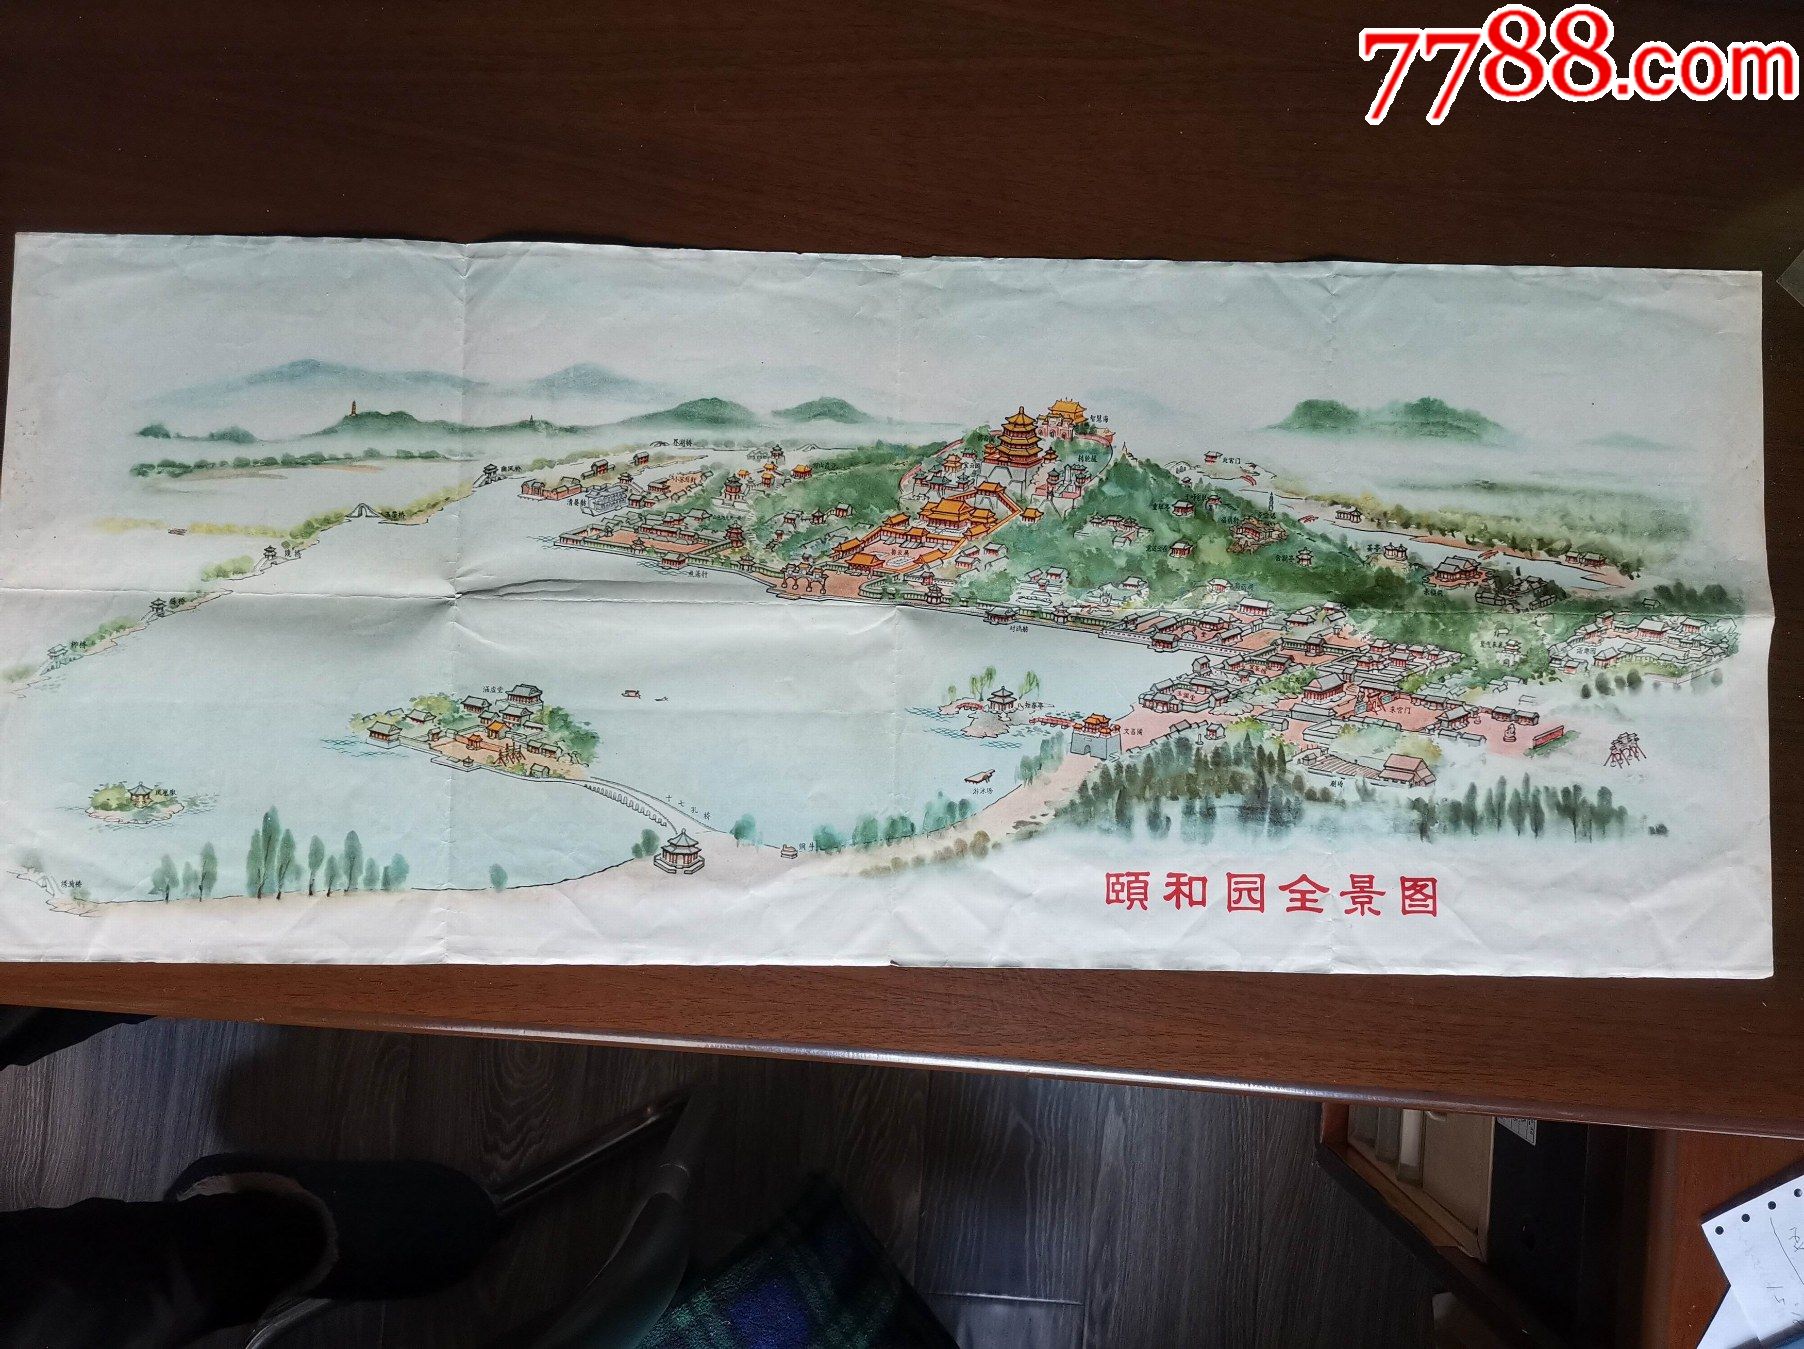 1960年颐和园全景图,颐和园介绍75x31cm